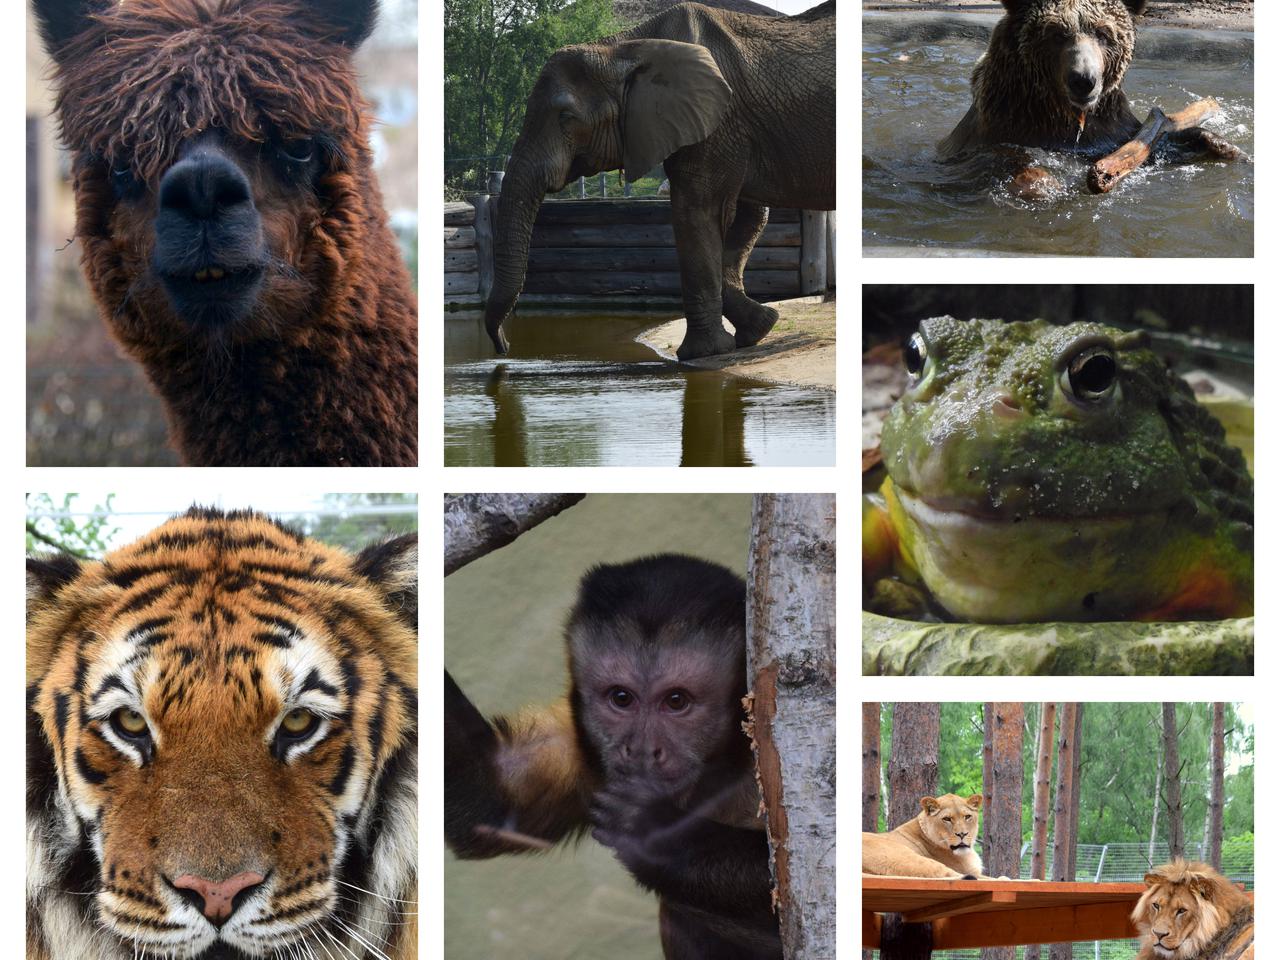 Jak dobrze znasz zwierzęta z poznańskiego ZOO? Znasz ich imiona? [WIELKI QUIZ]